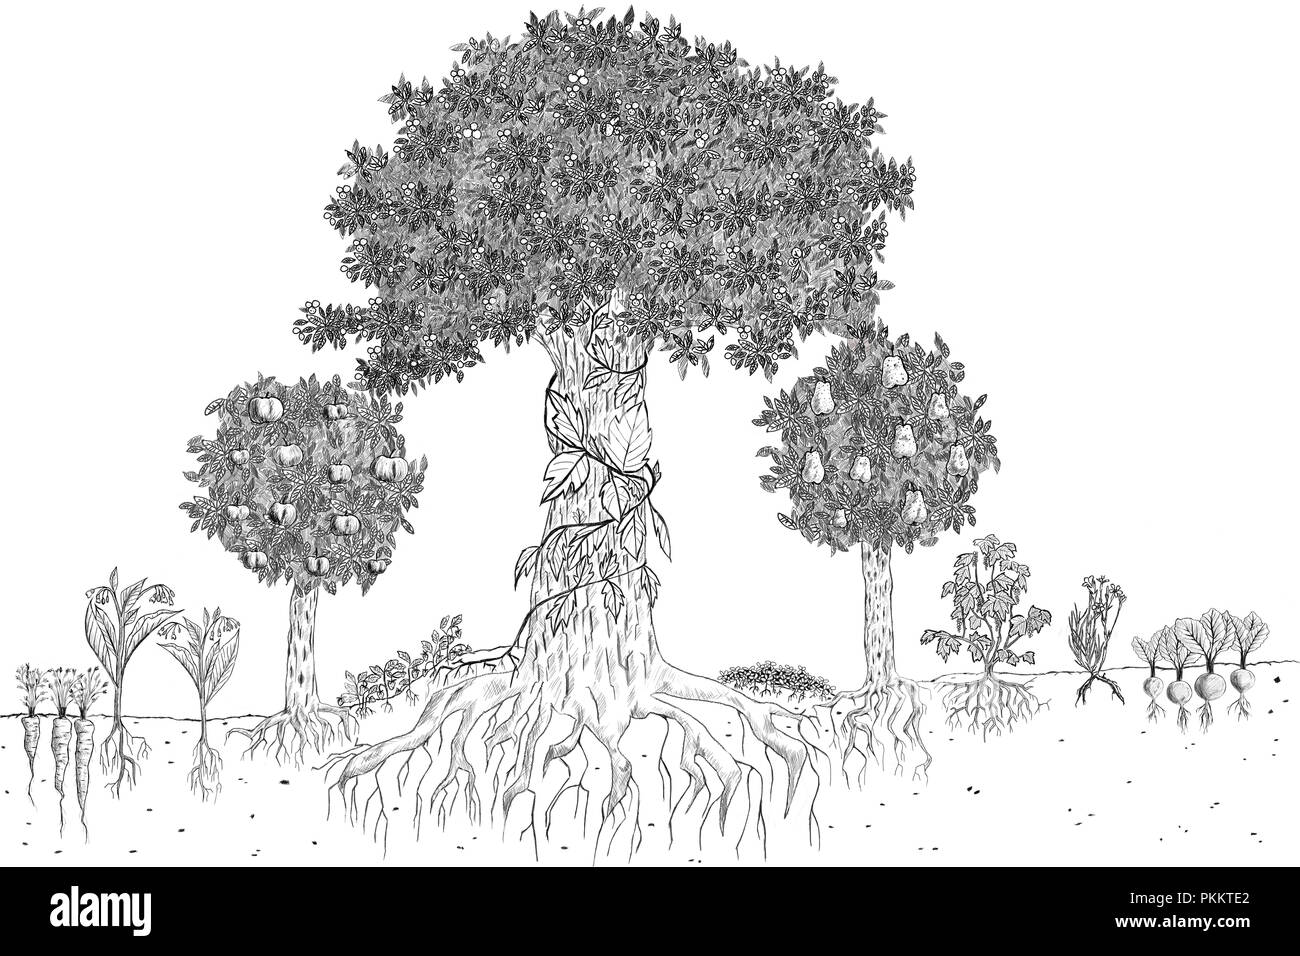 Croquis dessinés à la main, illustration d'un schéma de base de la permaculture dans les aliments végétaux jardin forestier dans des tons gris Banque D'Images